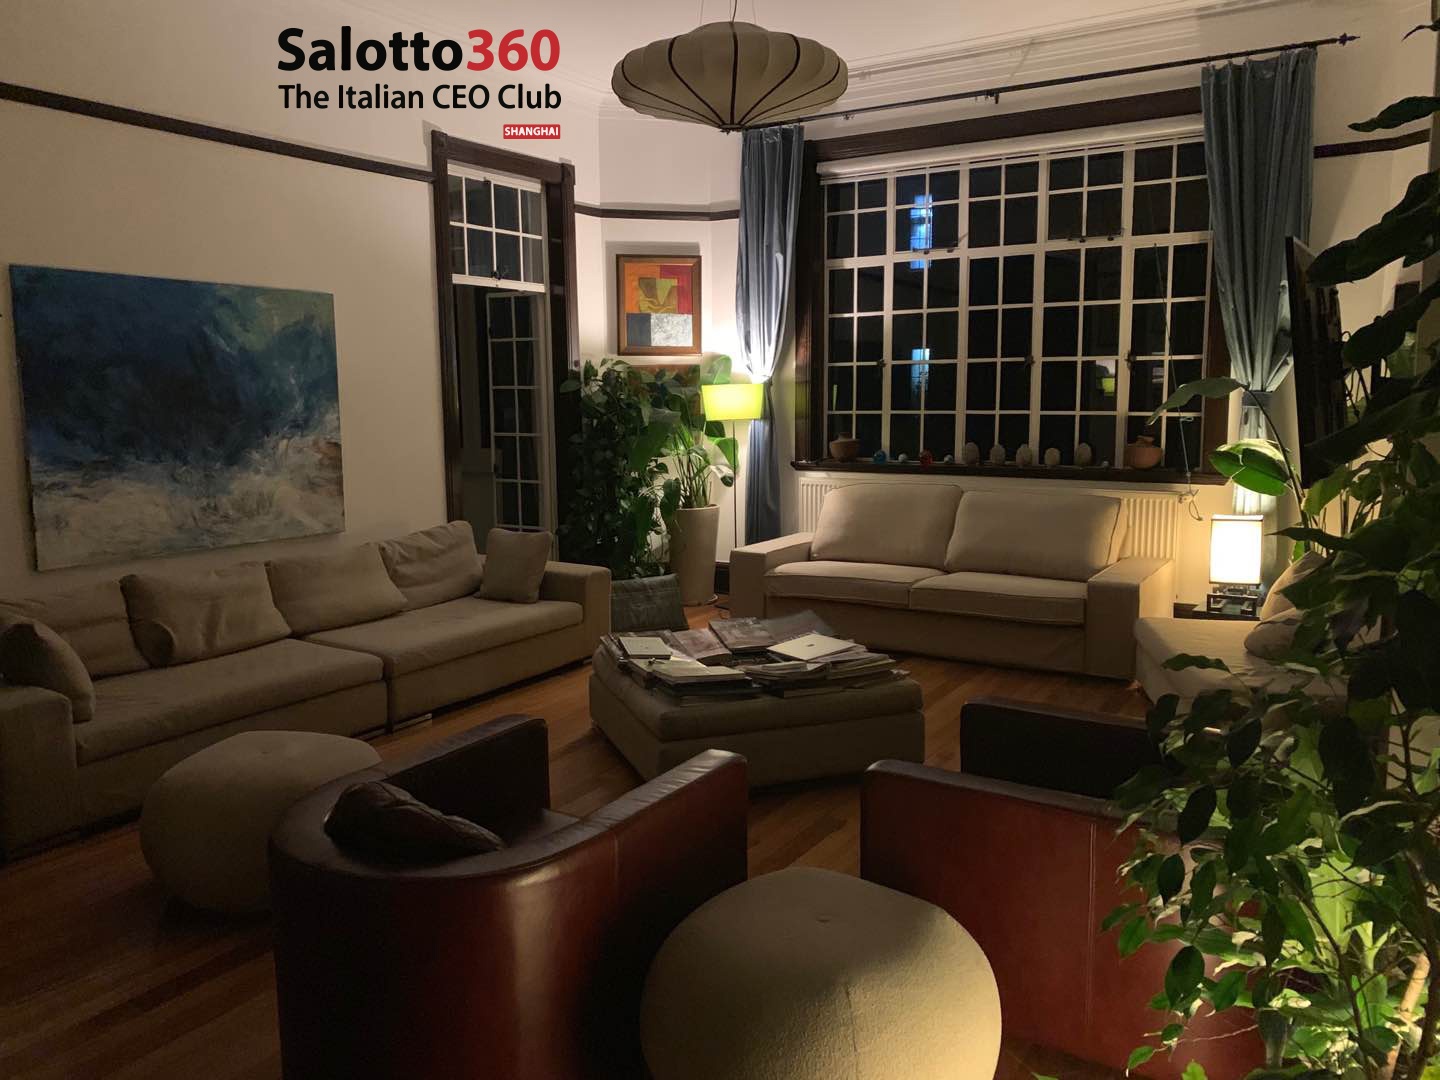 Luglio 2019 – Barbatelli & Partners con il suo team ha organizzato il secondo evento di Salotto 360.